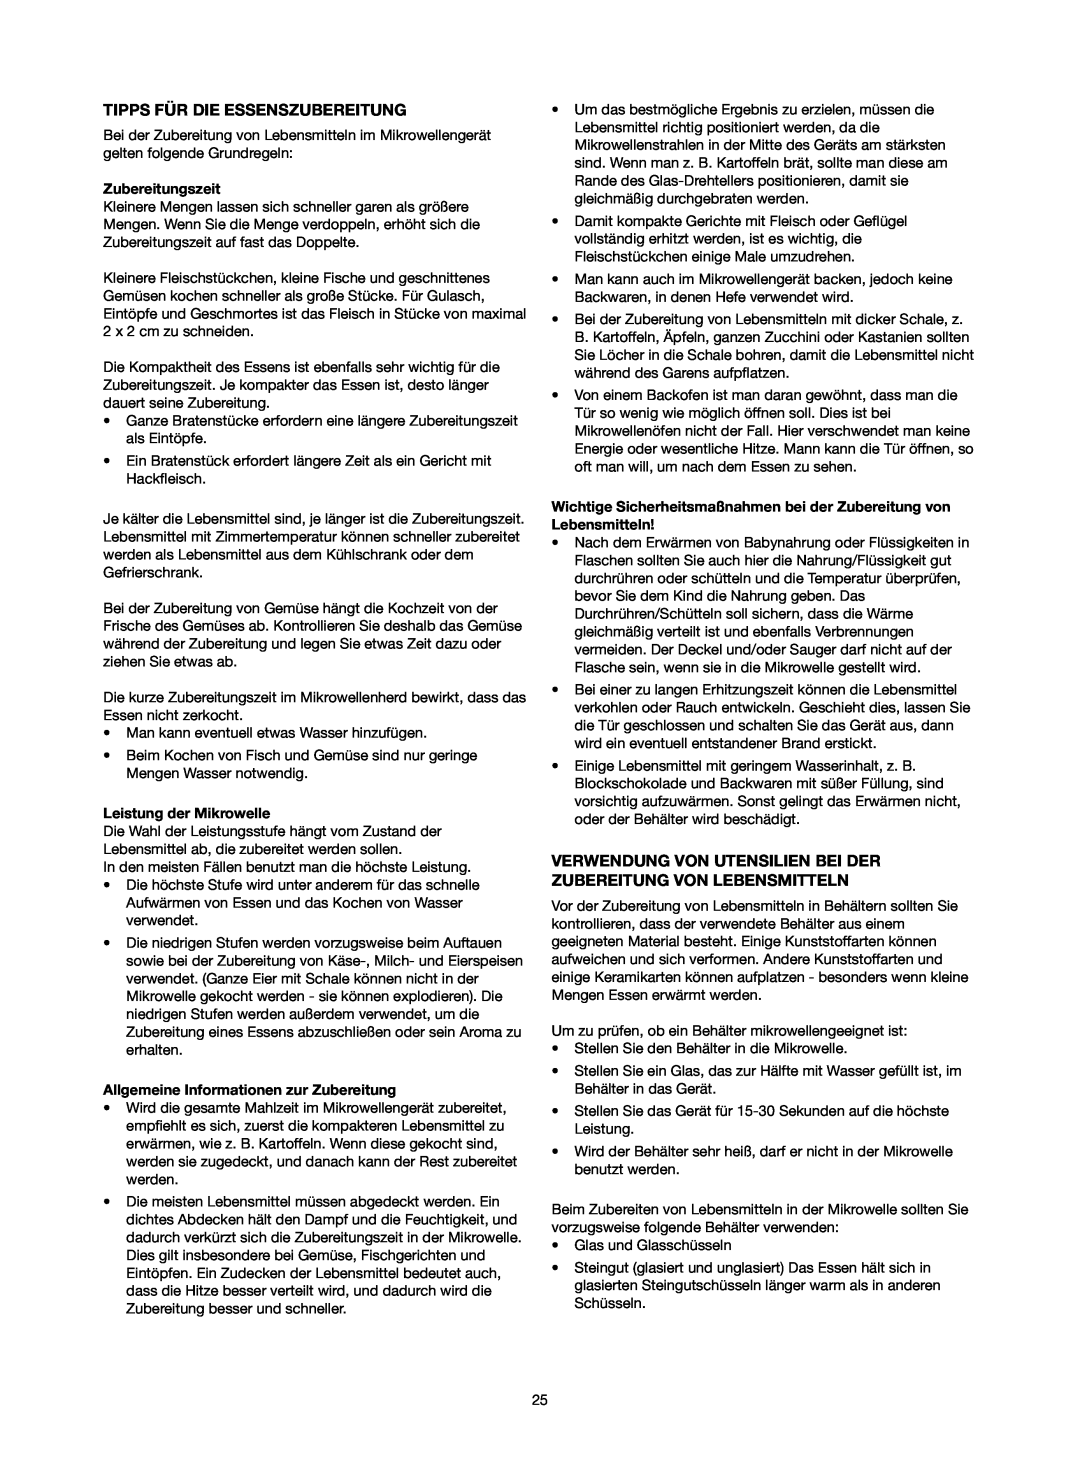 Melissa 753-084 manual Tipps Für Die Essenszubereitung, Zubereitungszeit, Leistung der Mikrowelle 